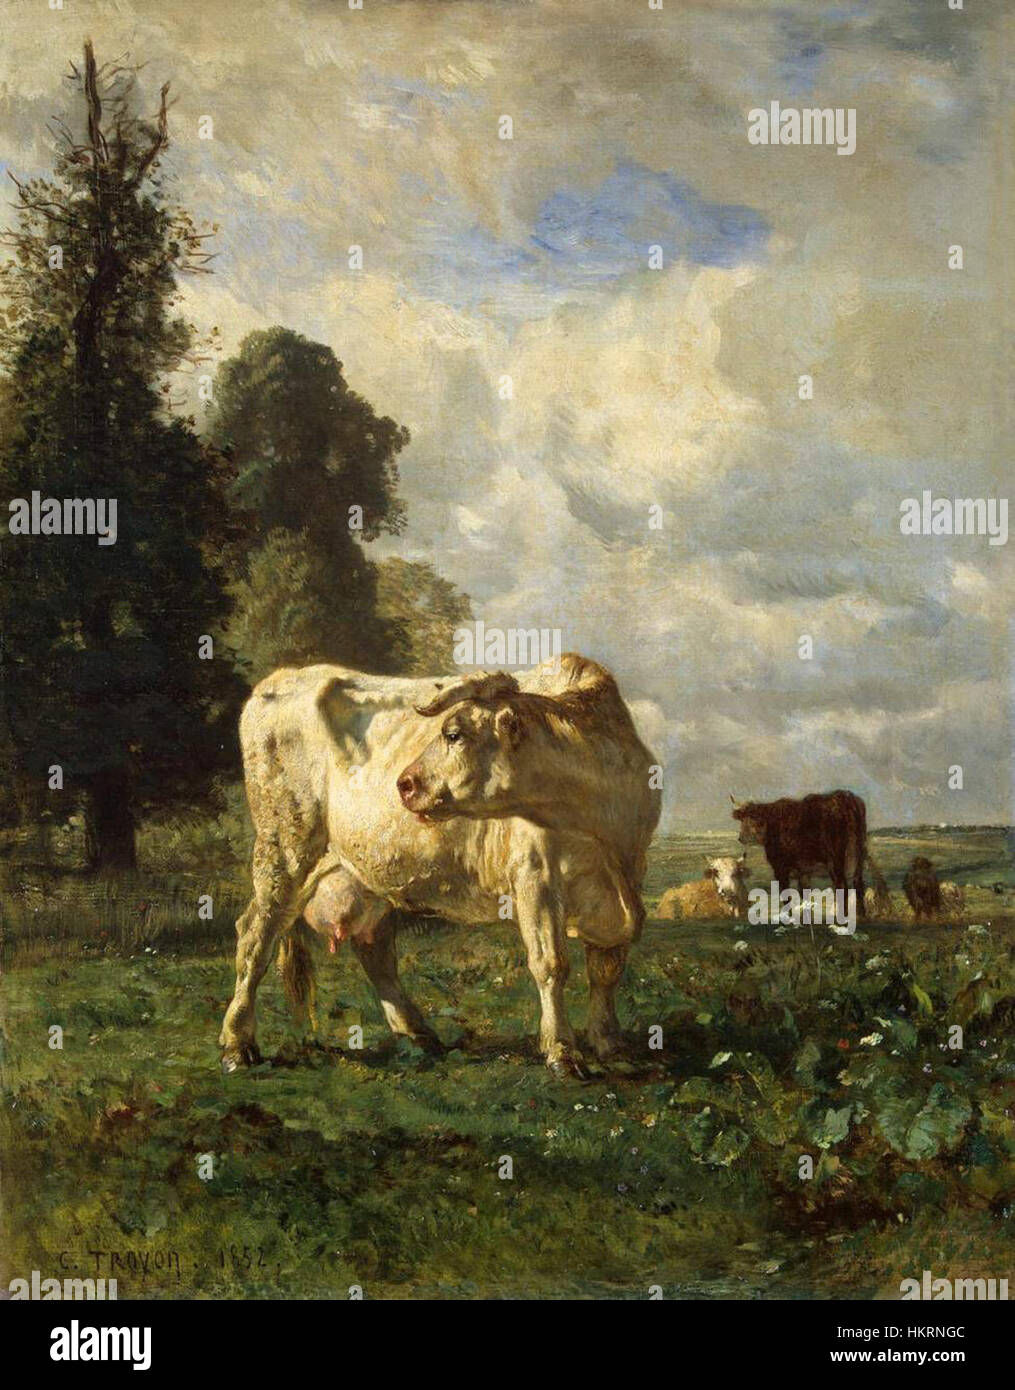 Cow Munching Grass - Wood Framed Art - Multiple Sizes